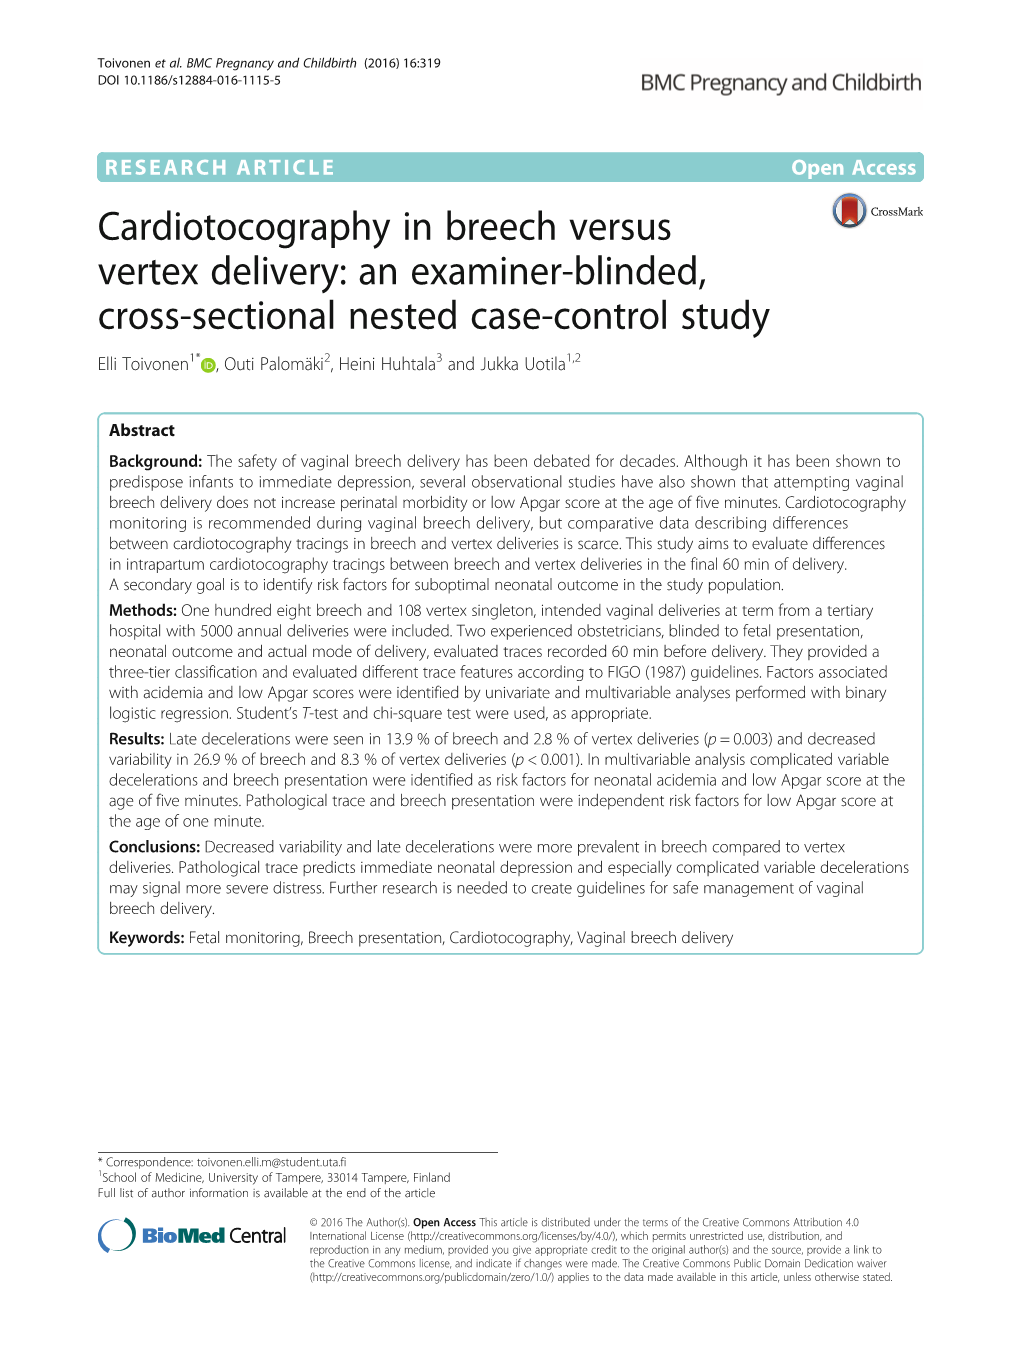 Cardiotocography in Breech Versus Vertex Delivery